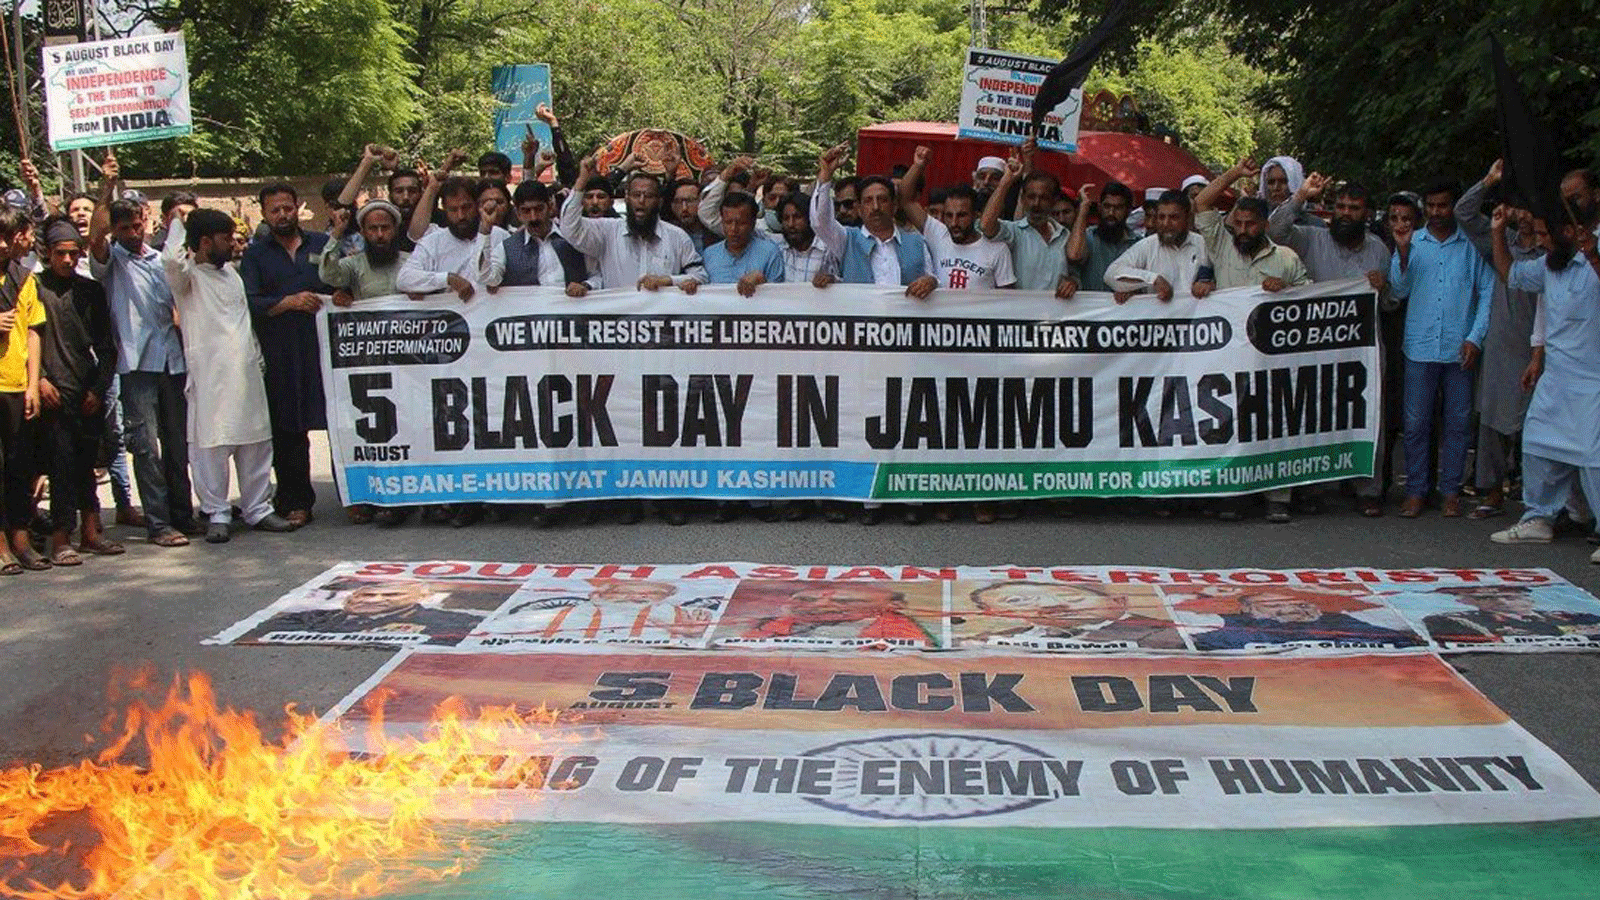 يتجمع الناس لإظهار التضامن مع الكشميريين الهنود خلال تجمع حاشد في مظفر أباد، أي كشمير الخاضعة للإدارة الباكستانية. 5 آب/أغسطس 2021